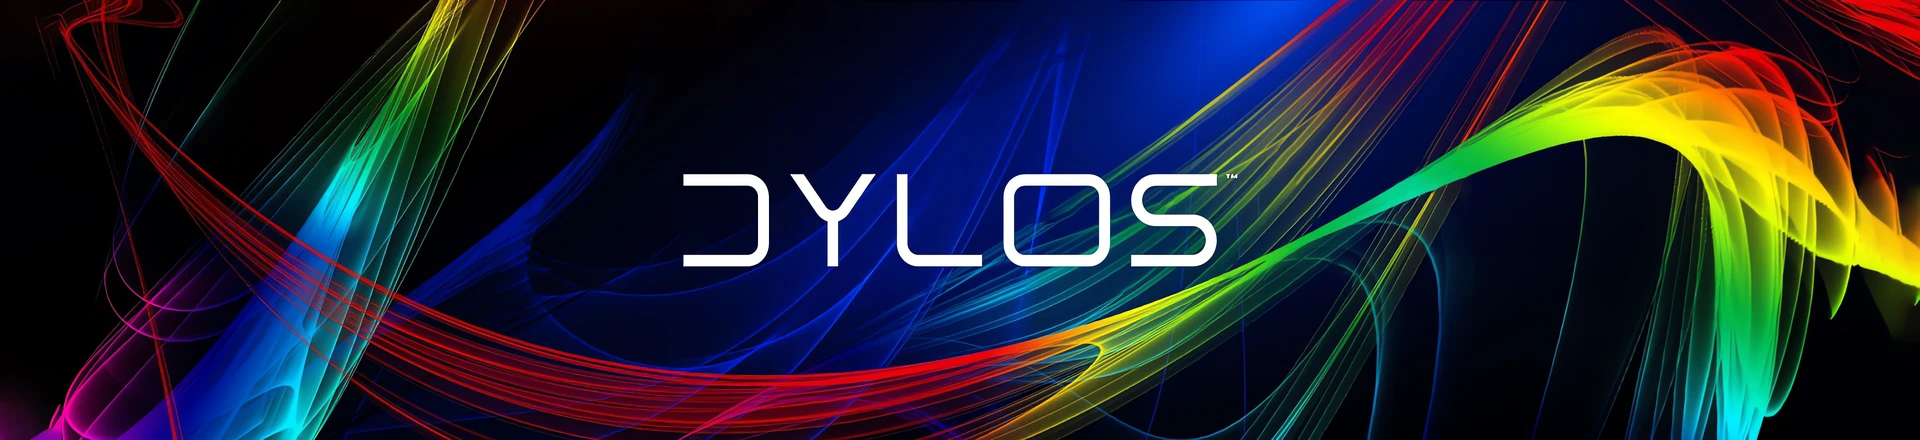 Obsidian Control Systems wydaje nowy software ONYX 4.4 wraz z kompozytorem pikseli DYLOS